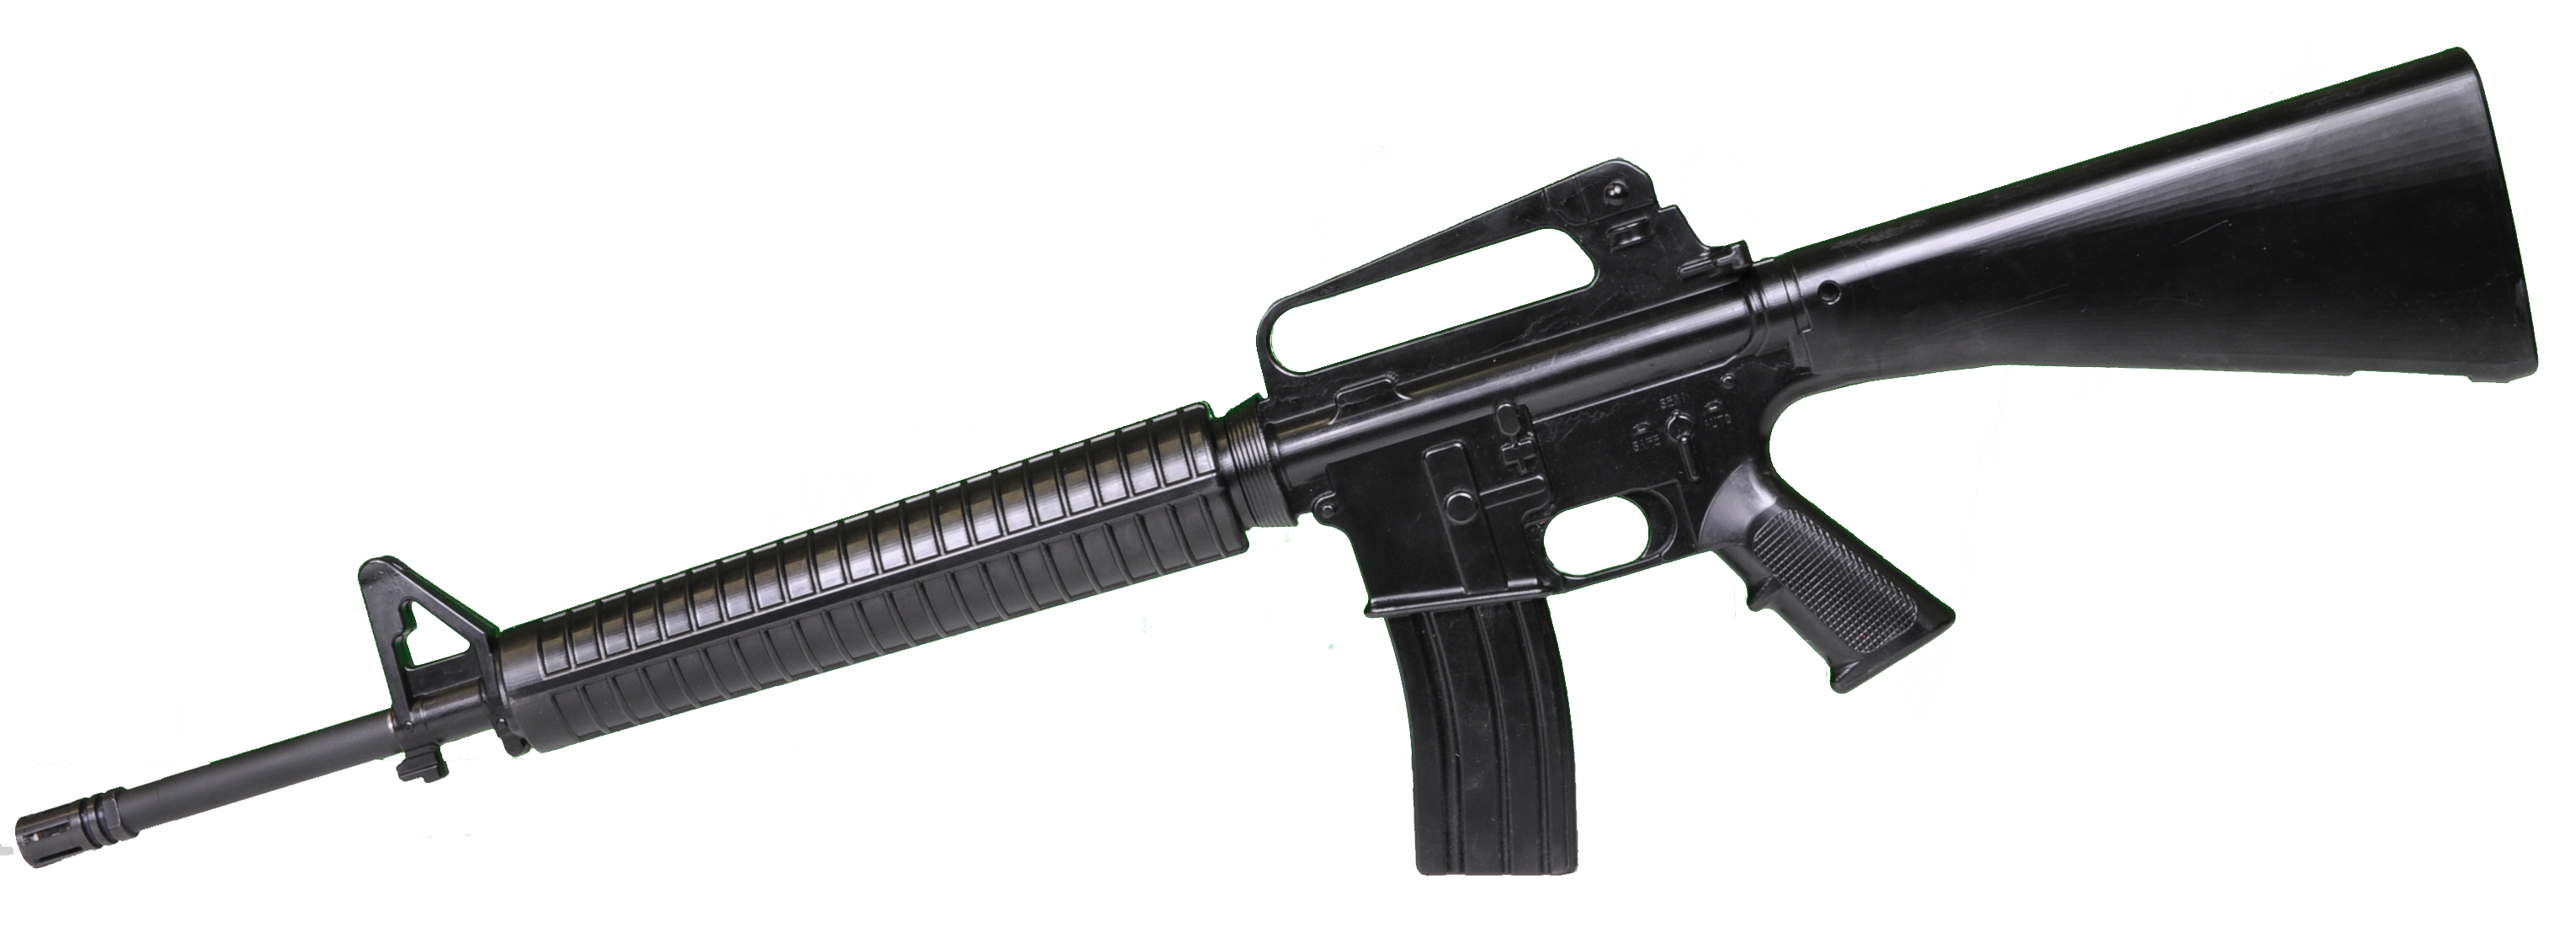 M16美国突击步枪